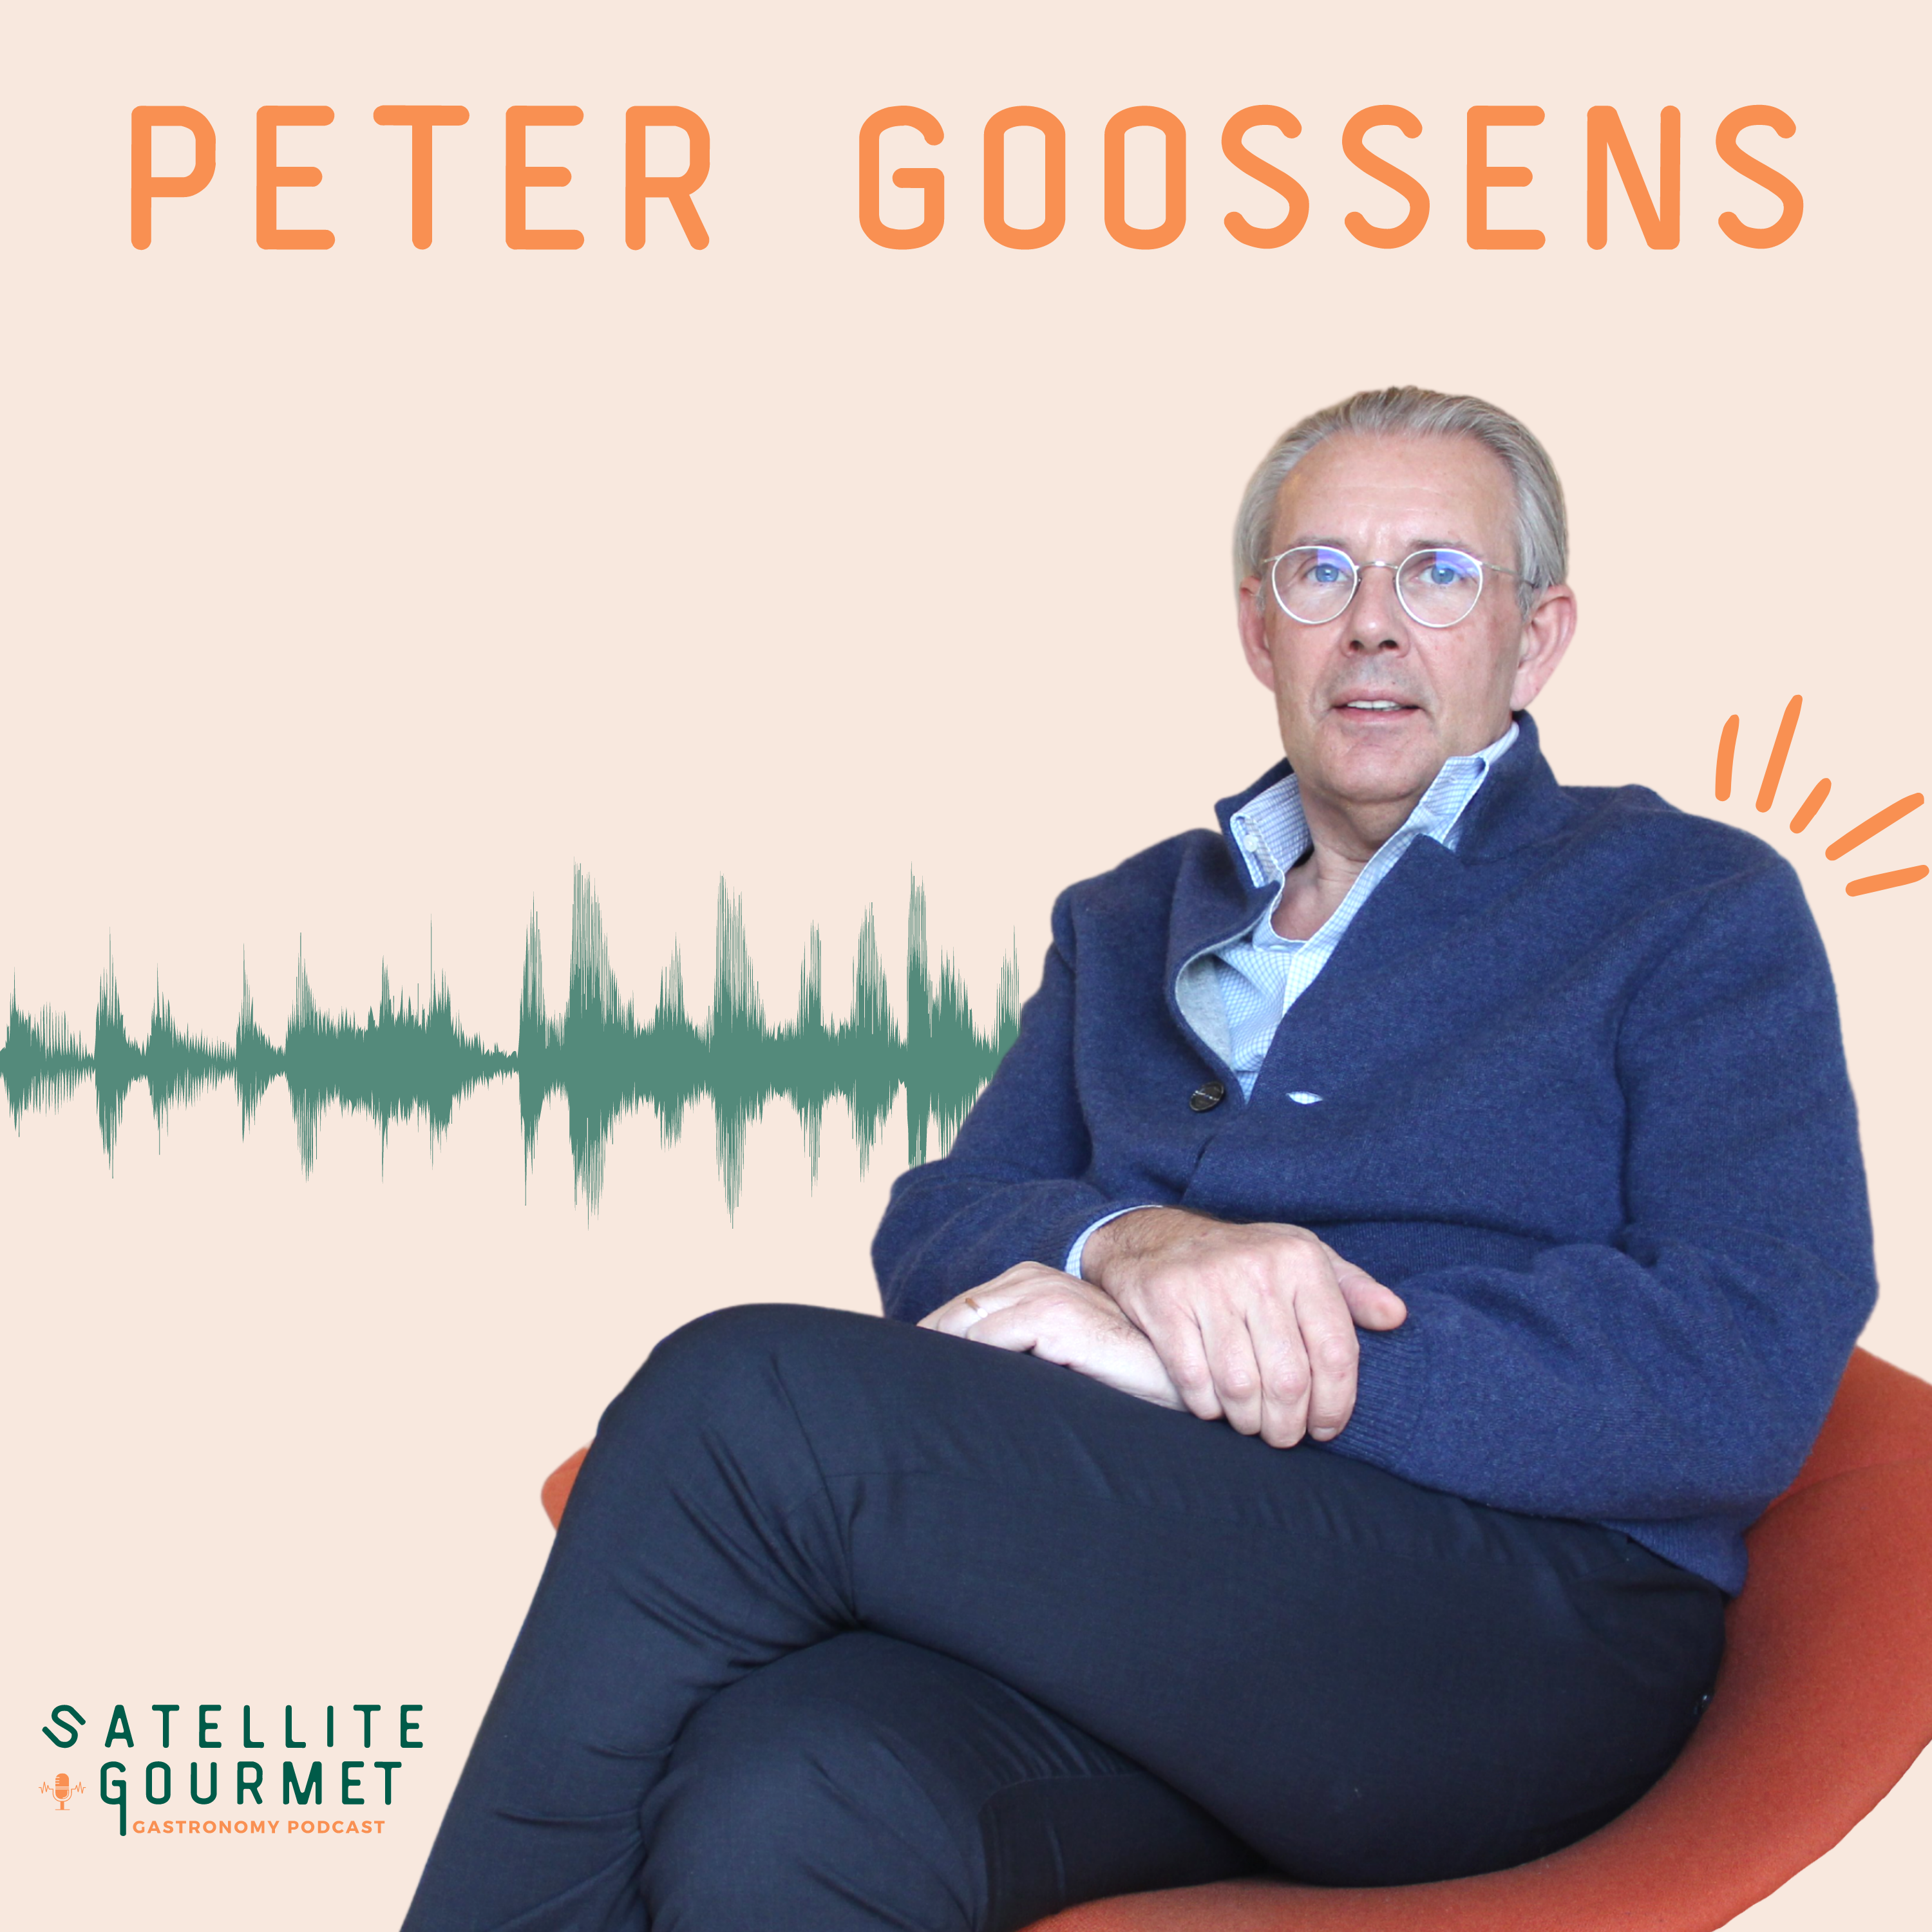 Peter Goossens